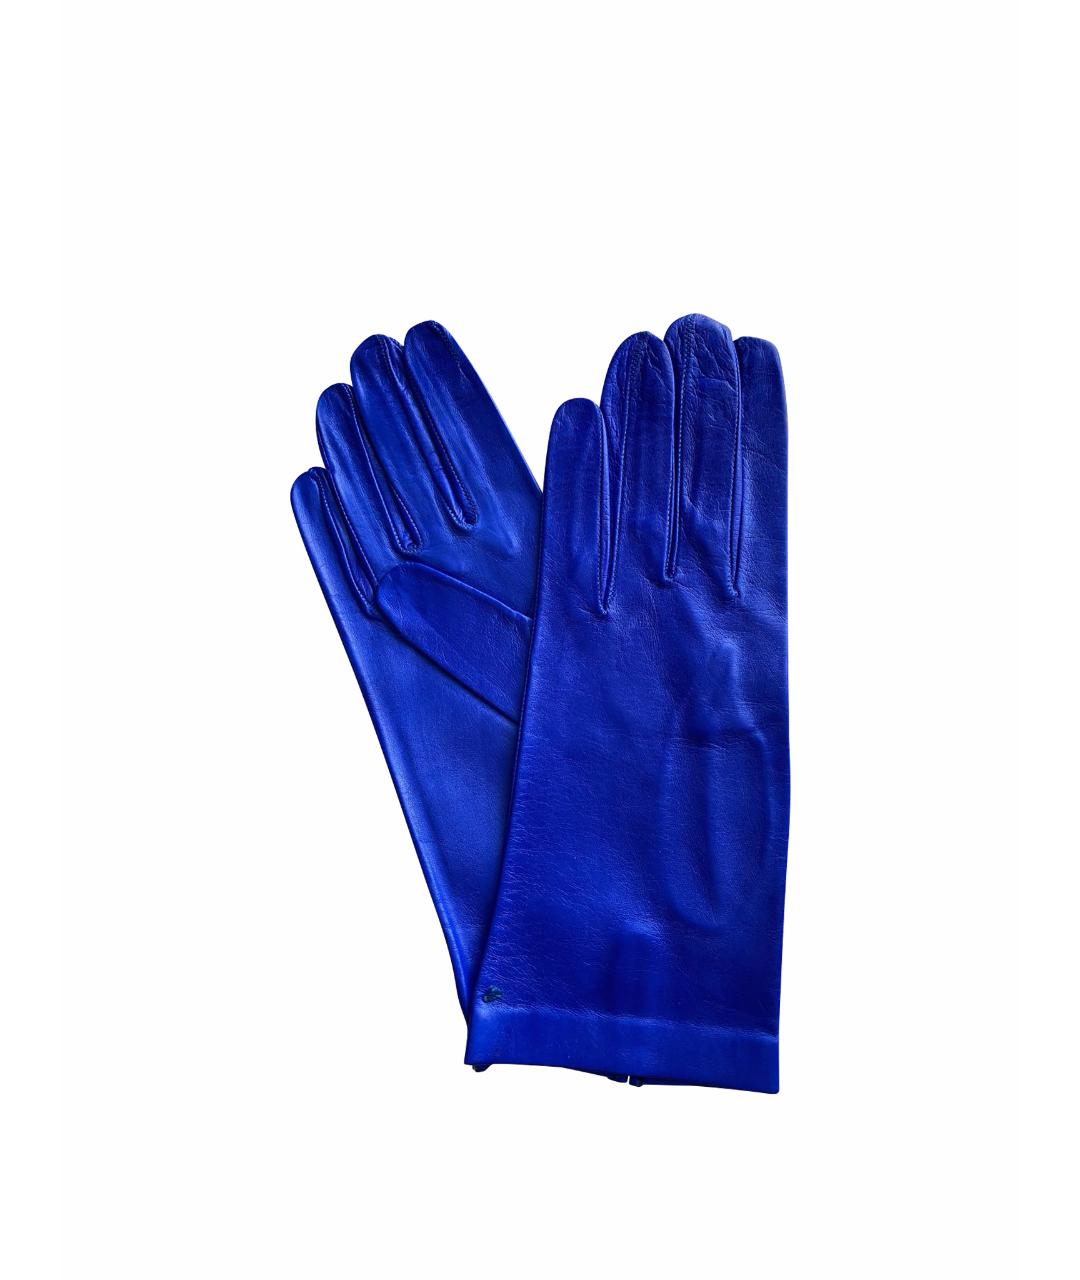 SERMONETA Синие кожаные перчатки, фото 1